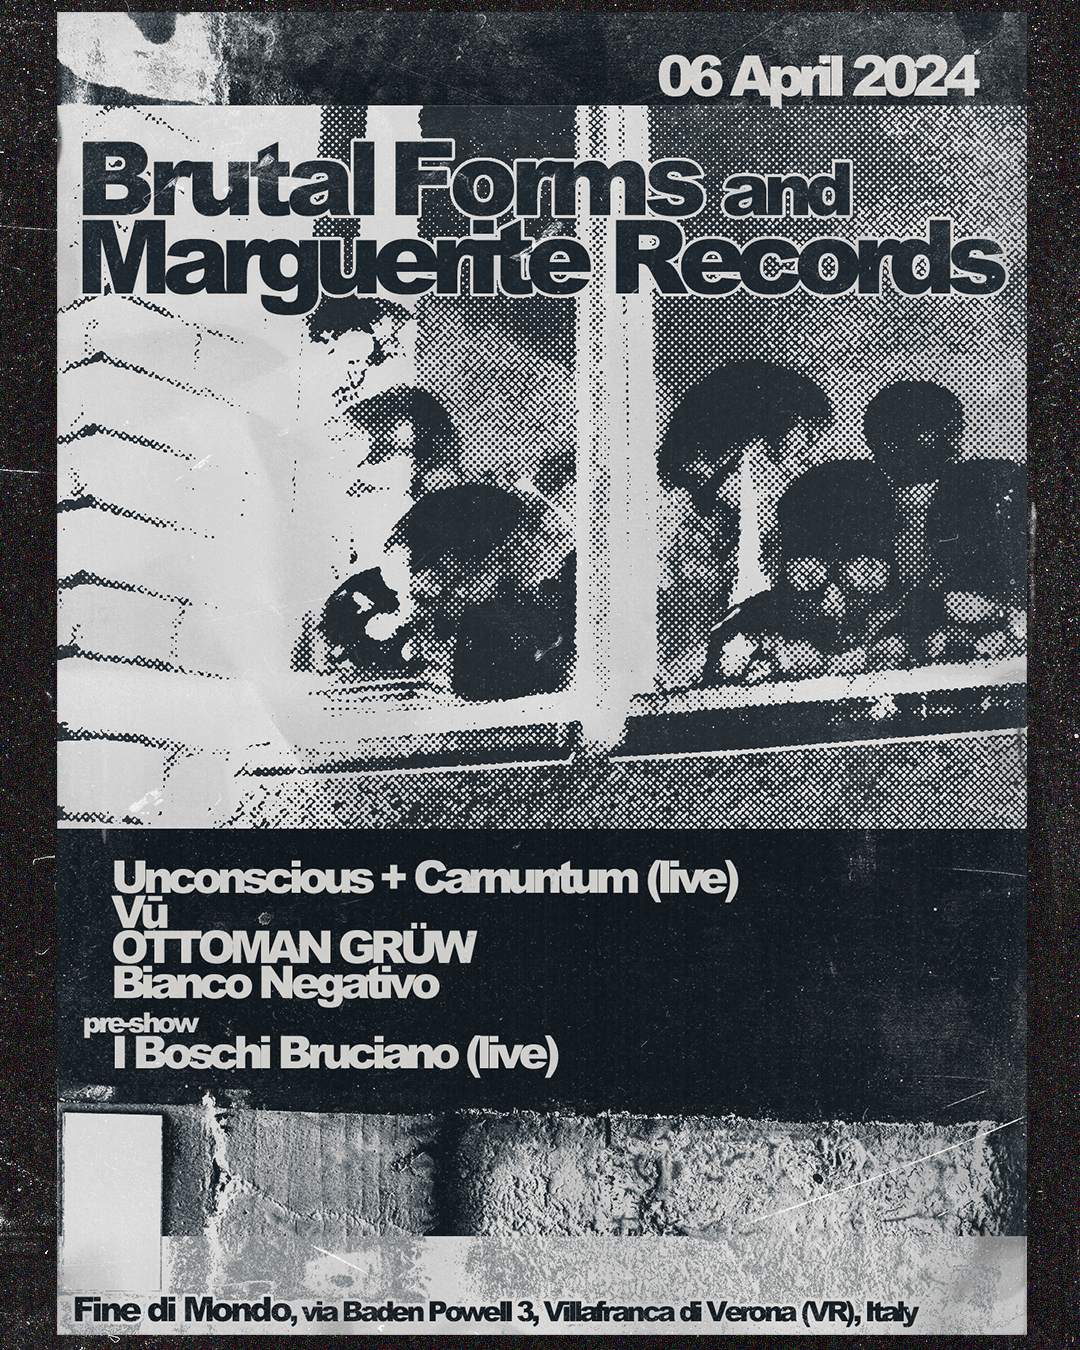 Brutal Forms & Marguerite Records present - Página frontal